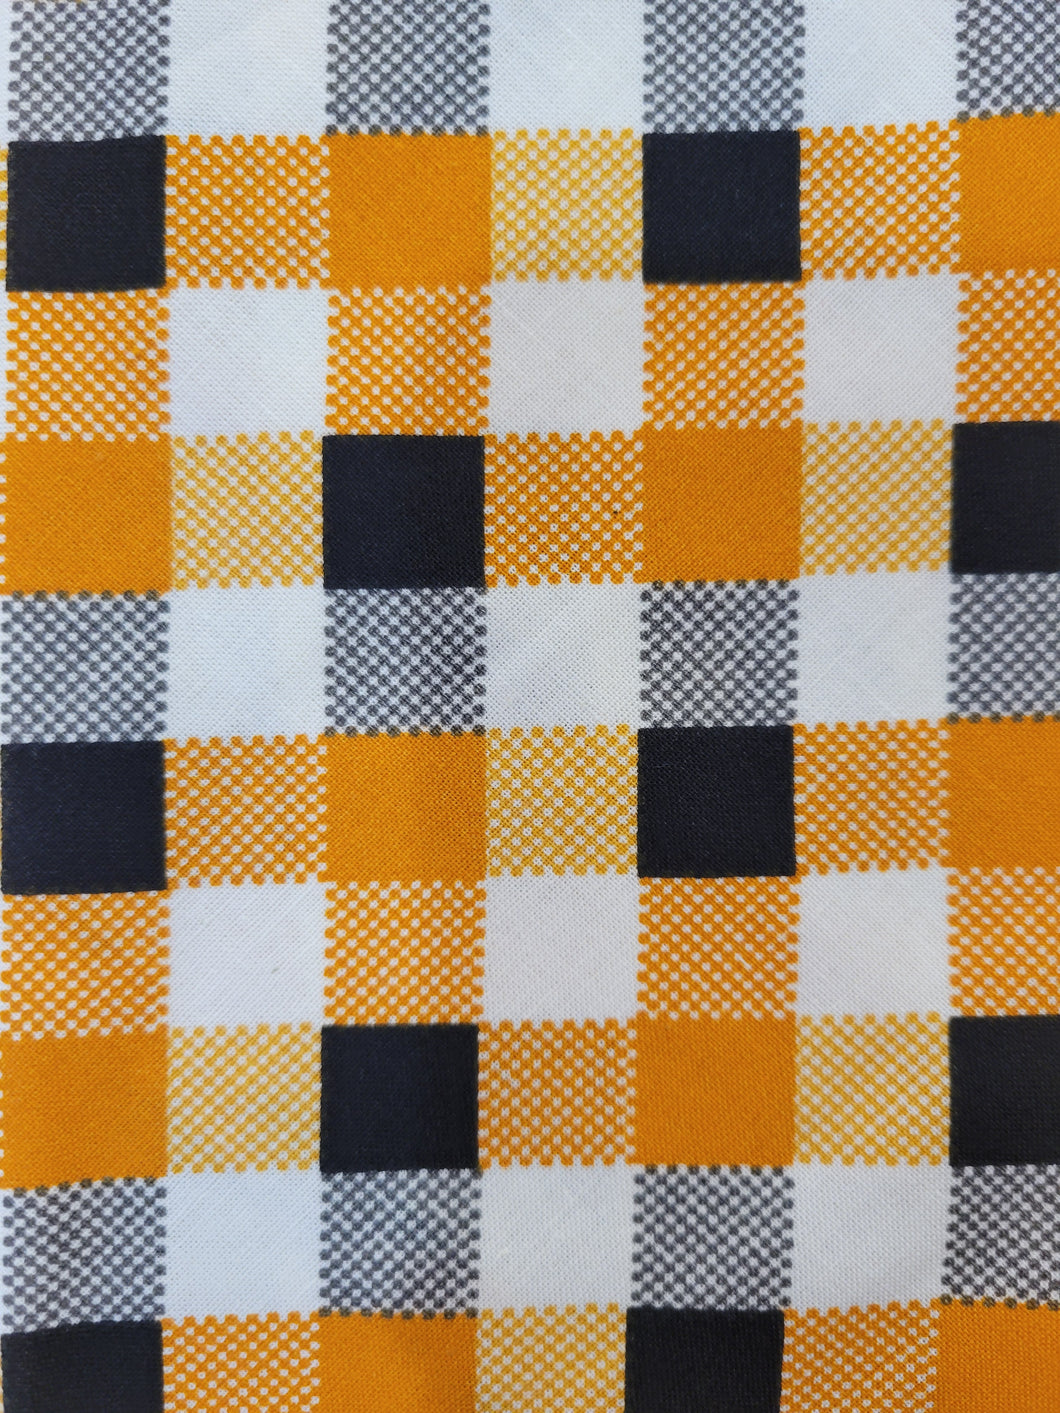 Orange/Black/Cream Checkered (SMALL)